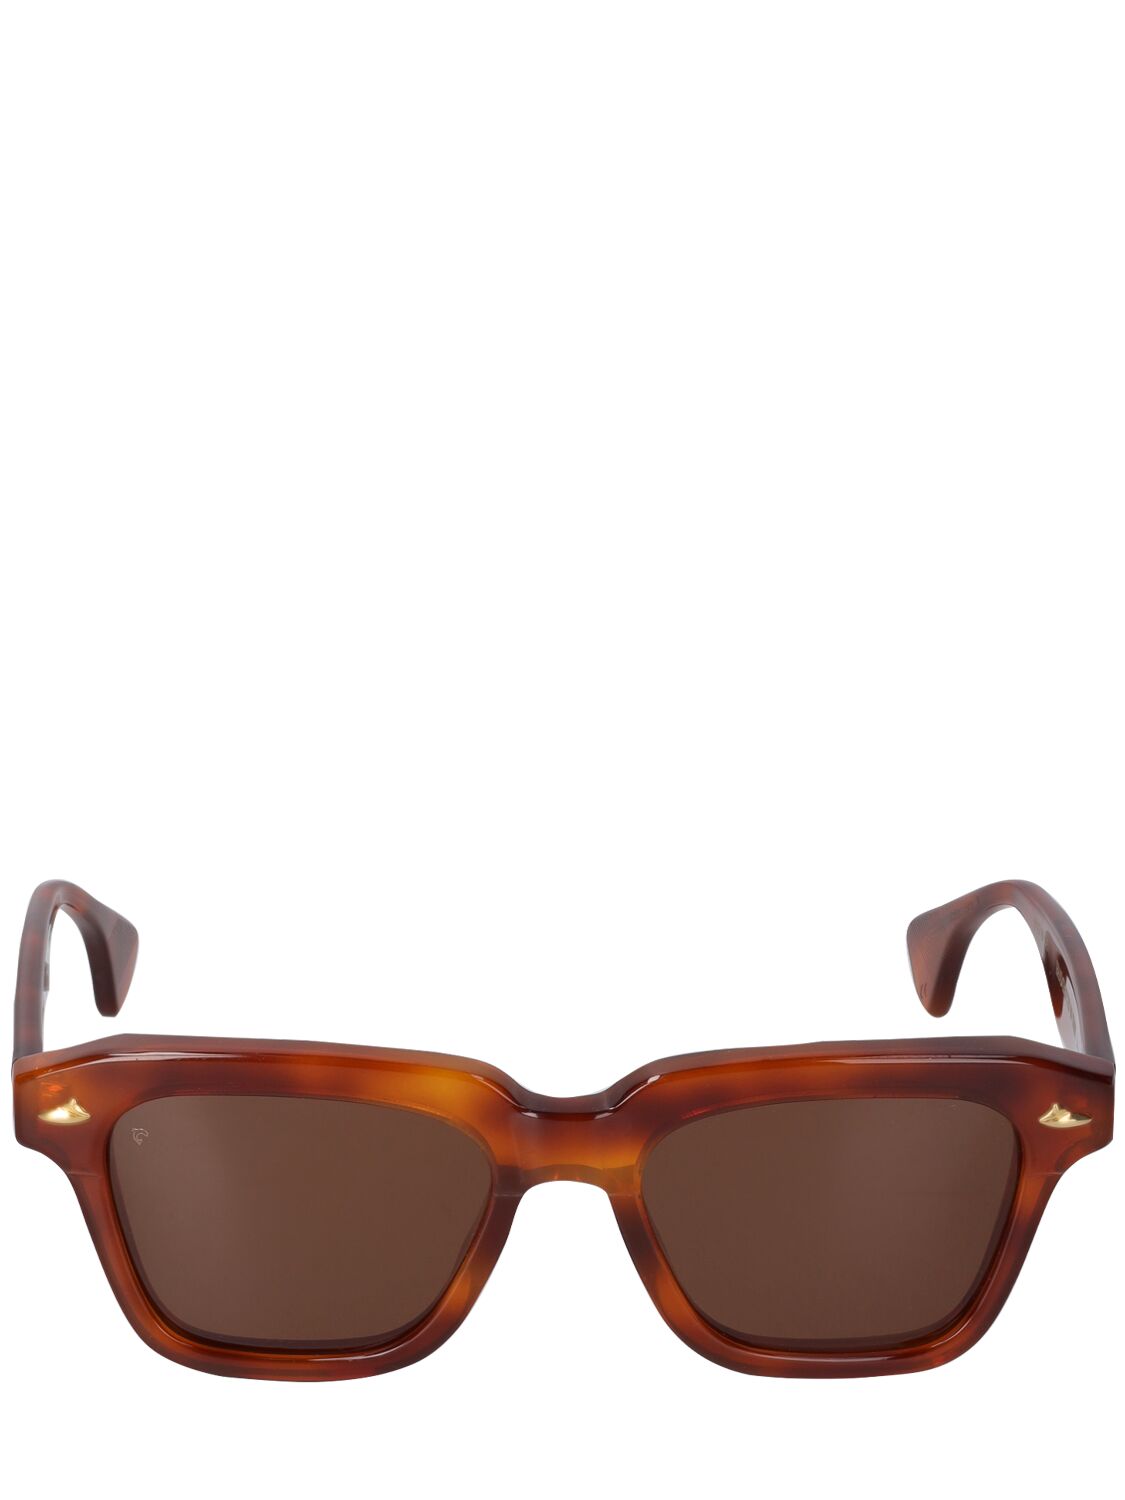 Image of Quattro Squared Acetate Sunglasses